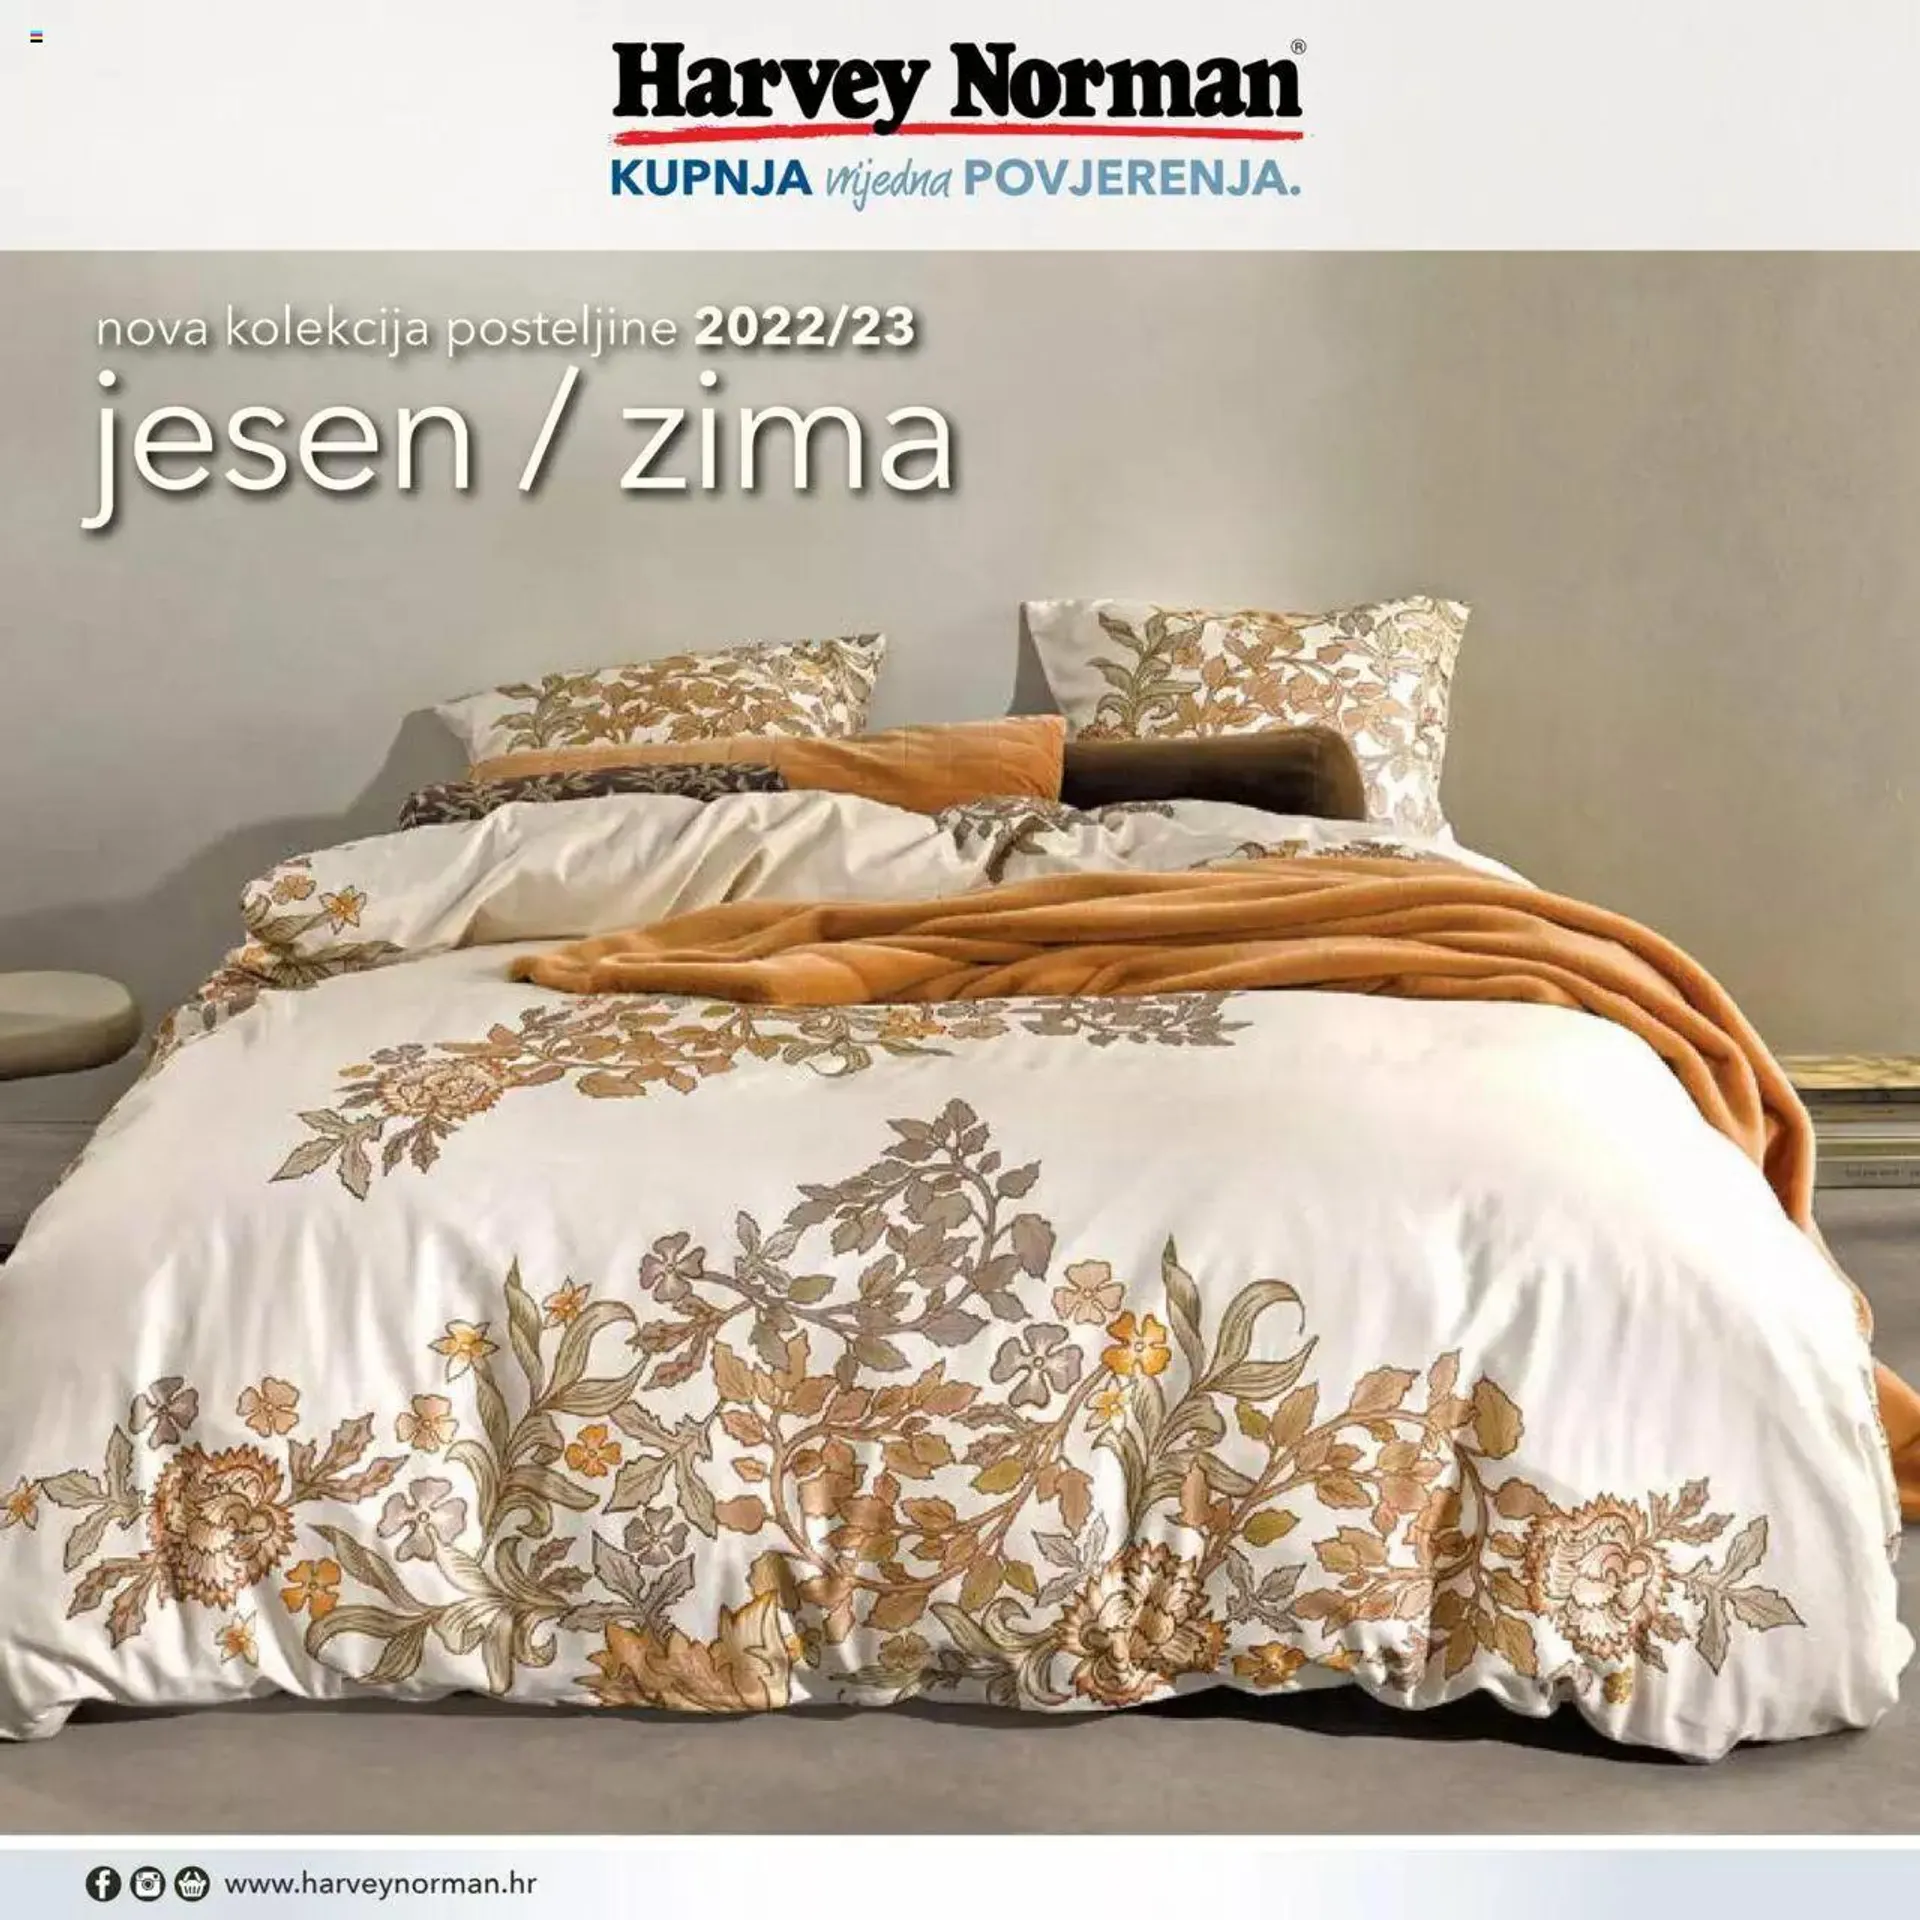 Nova kolekcija posteljine 2022 Harvey Norman - 0